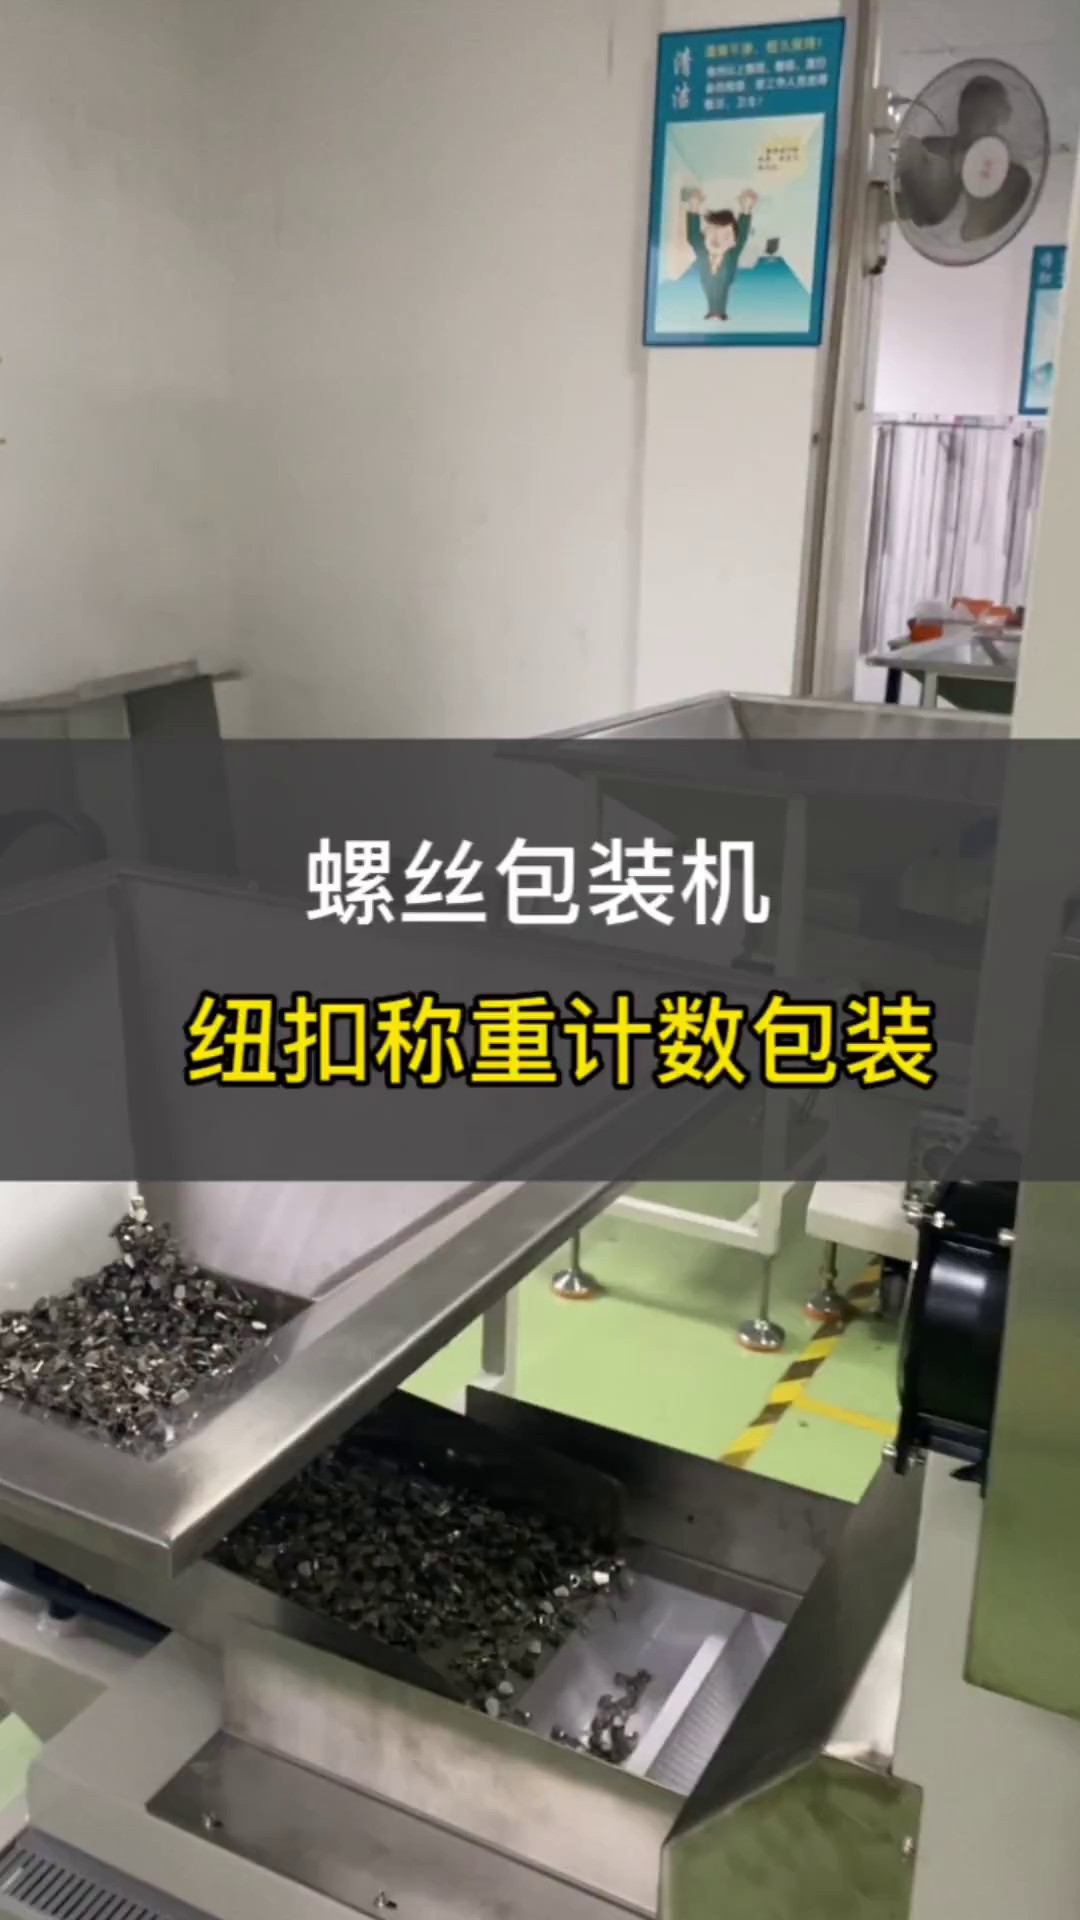 上海螺丝称重计数包装机批发价格,称重计数包装机